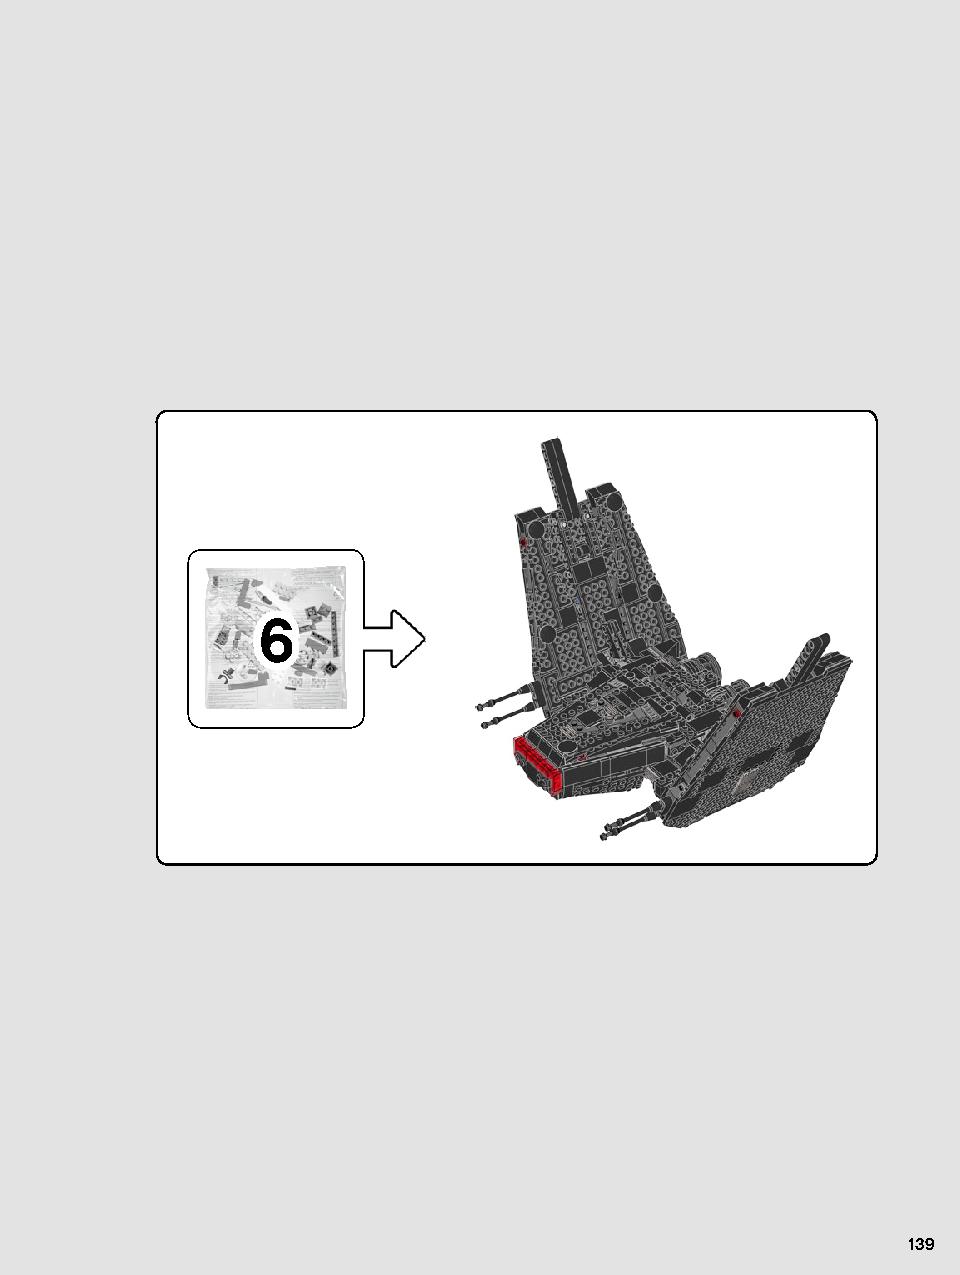 스타워즈 카일로 렌의 셔틀™ 75256 레고 세트 제품정보 레고 조립설명서 139 page